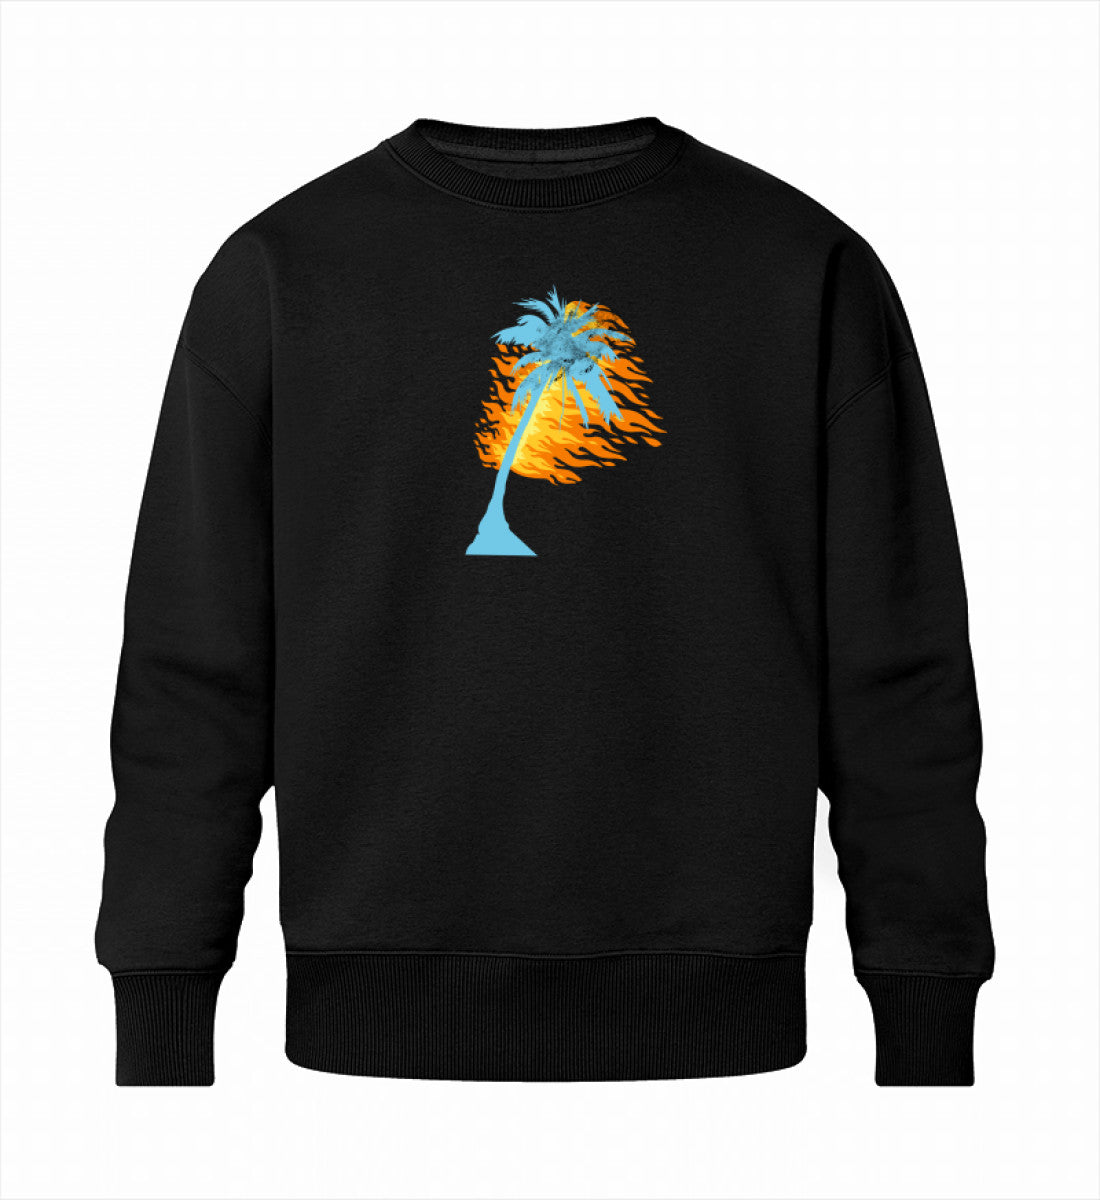 Schwarzes Sweatshirt Unisex für Frauen und Männer bedruckt mit dem Design der Roger Rockawoo Kollektion Surf where wet dreams become true